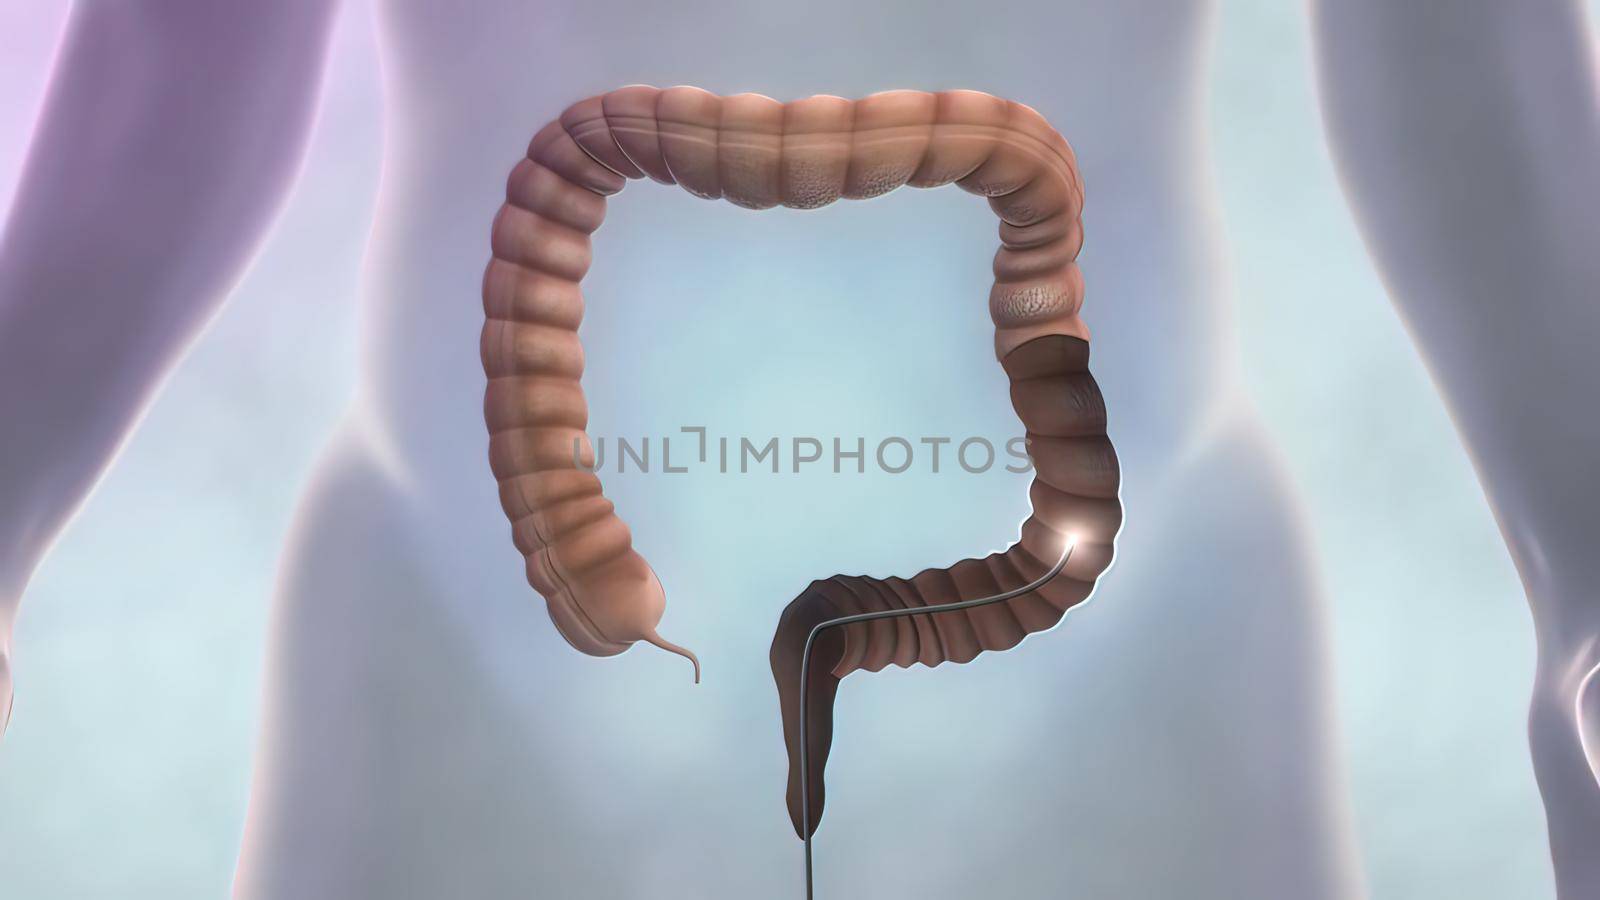 digestive system, colonoscopy 3D illustration